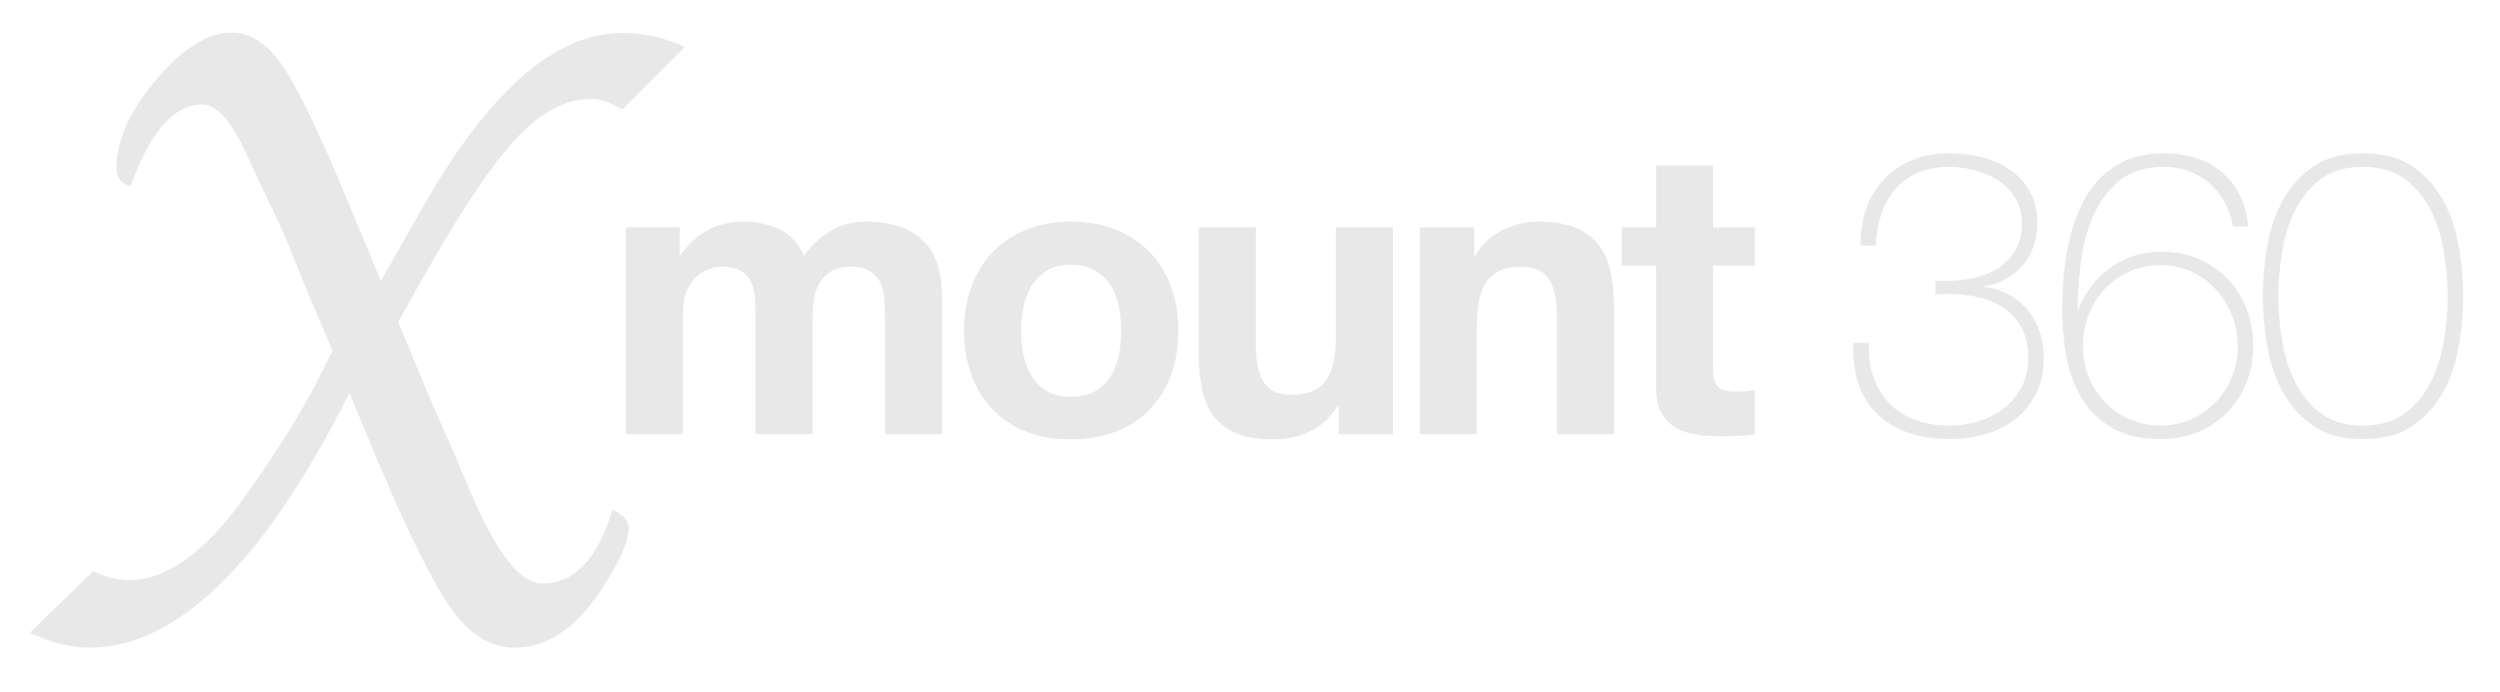 DJI to X3 Mount — Xmount360